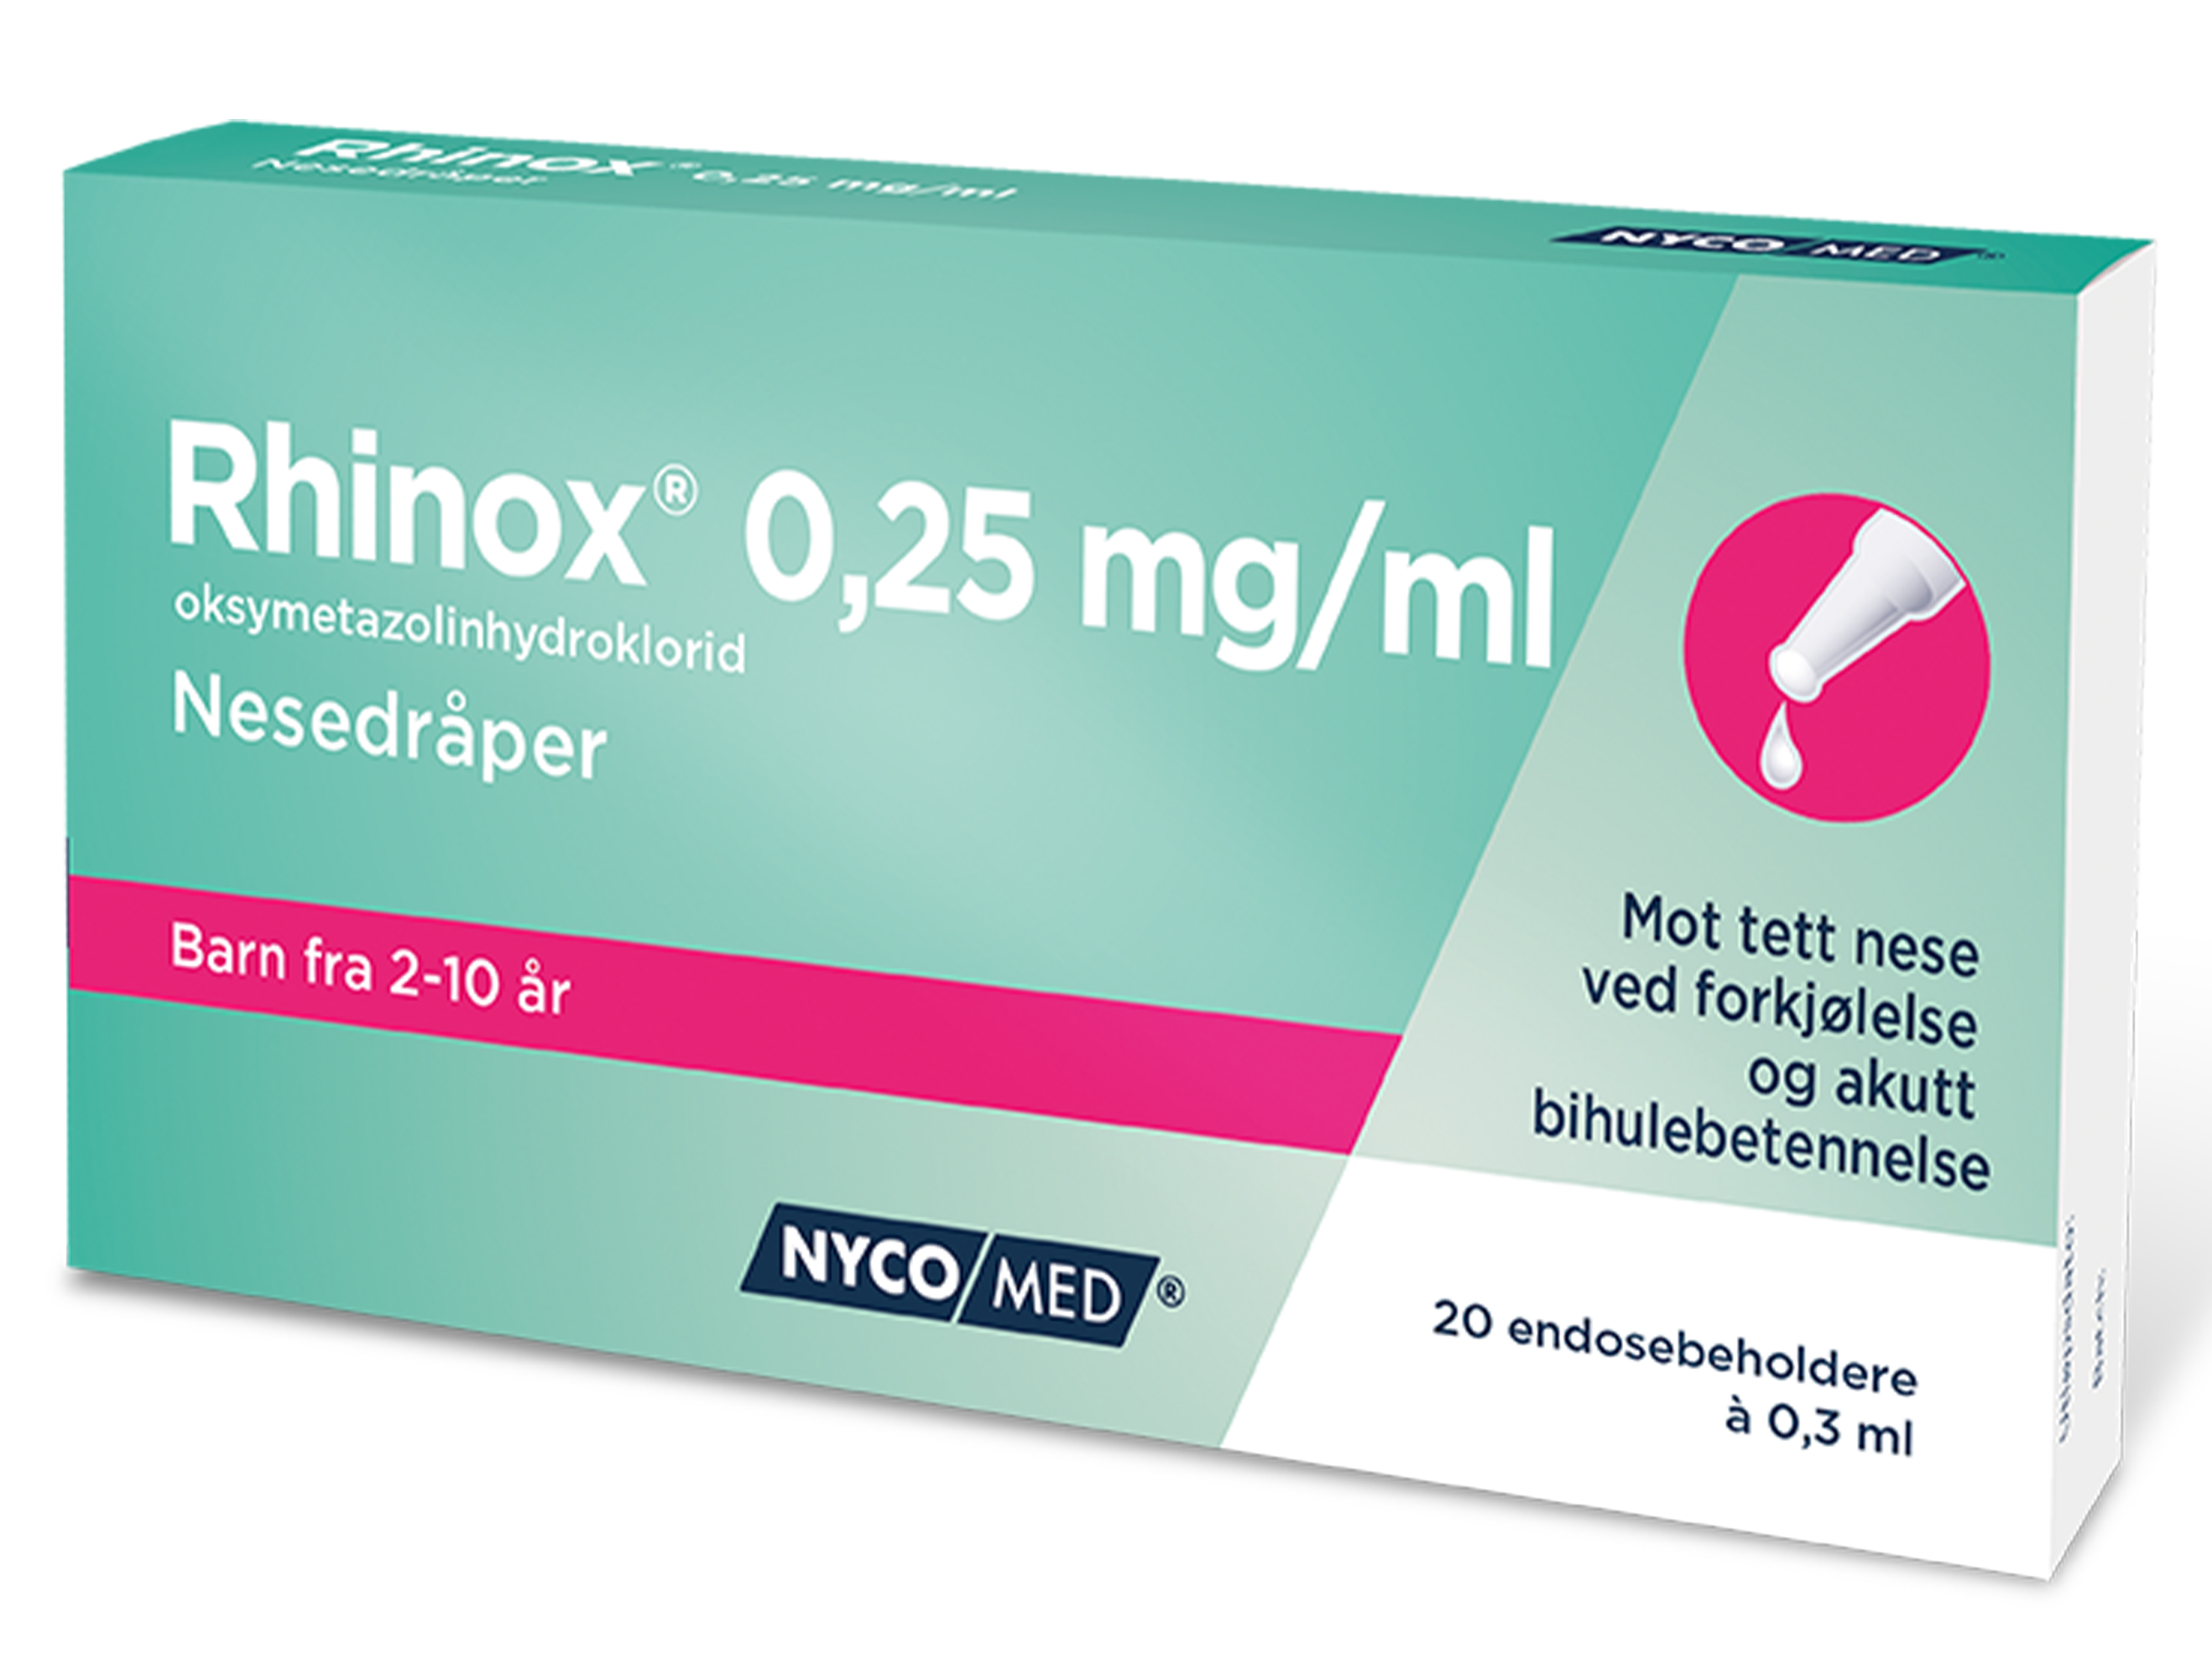 Rhinox Nesedråper 0,25mg/ml, 0,25 mg/ml til barn, 20 endoser